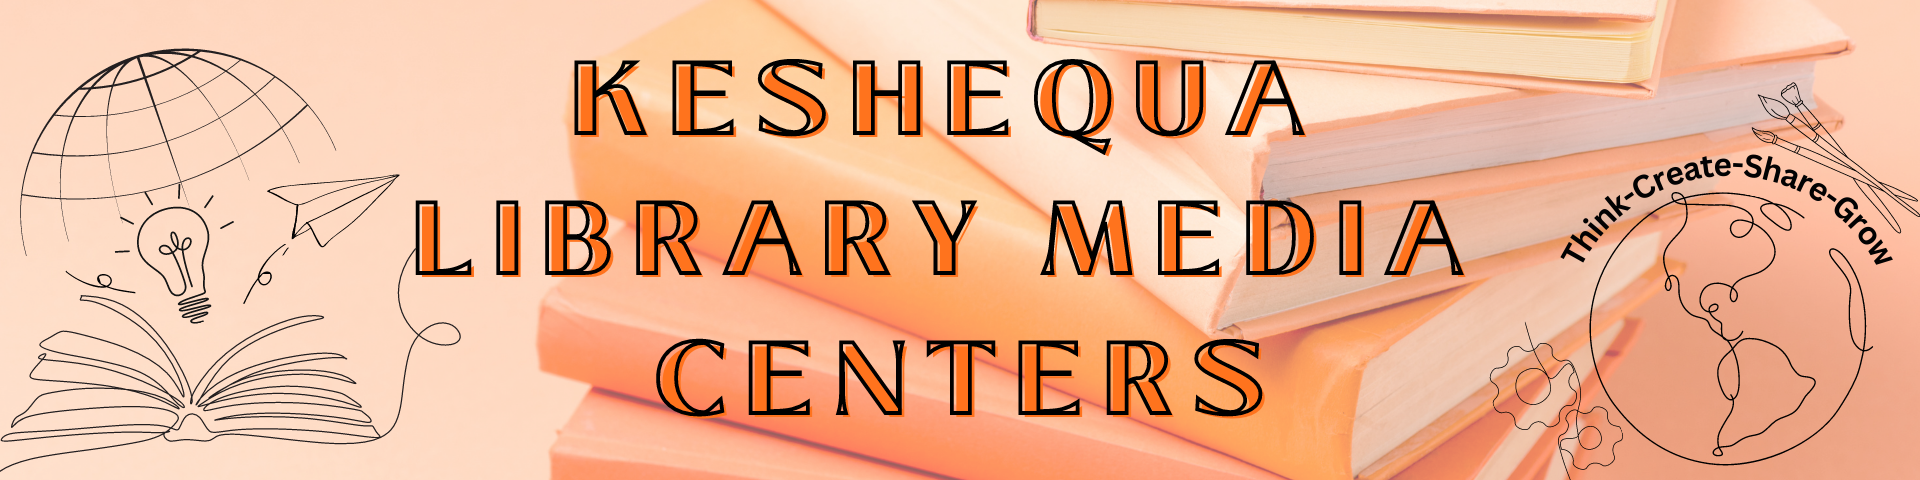 Keshequa Library Media Centers Banner 